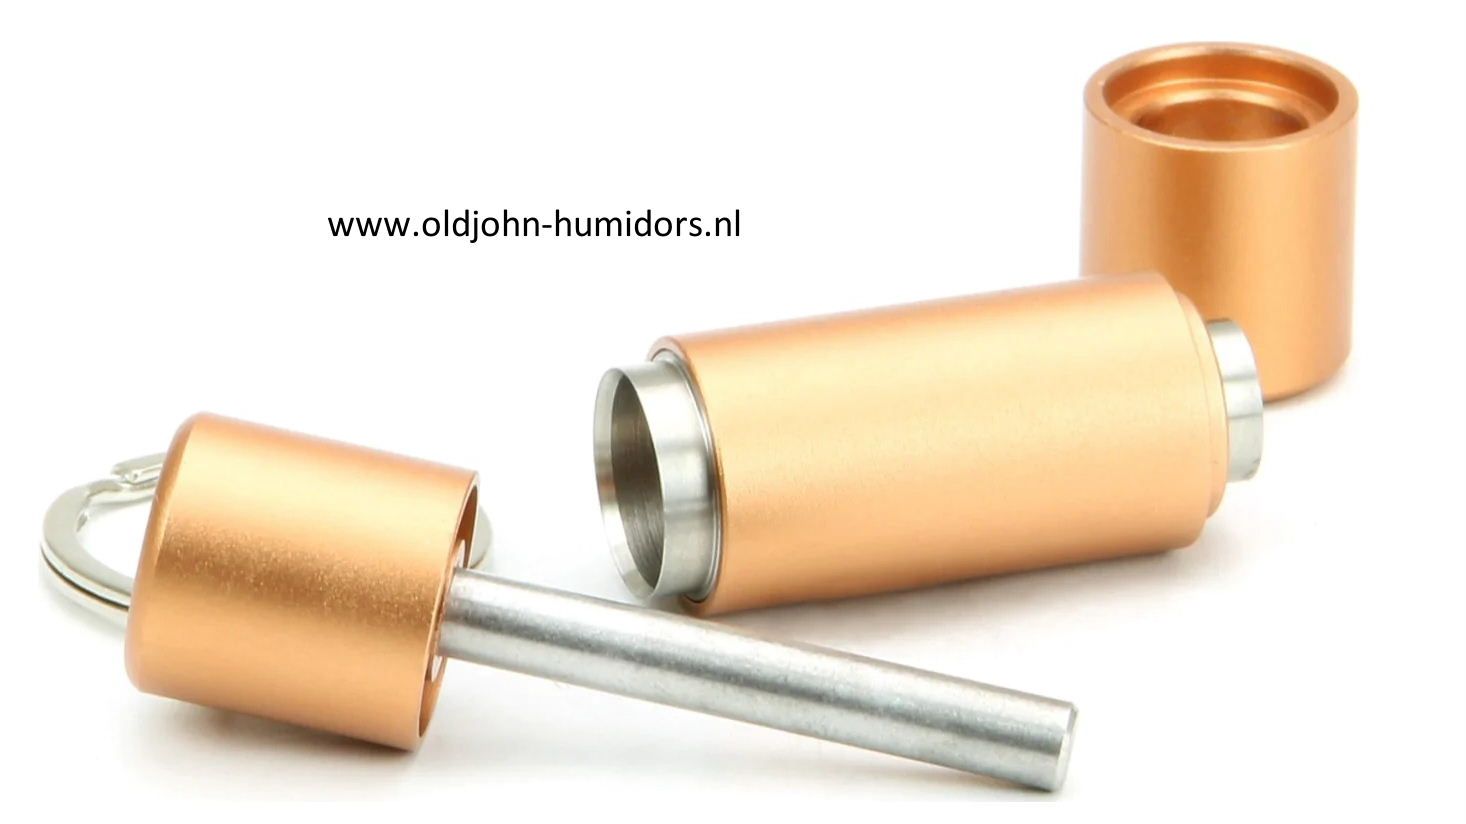 skn33 Nieuwe professionele top merk sigarenboor van ADORINI ® - chirurgisch staal - dubbel mes, vlijmscherp - geschenkverpakking - leverbaar uit voorraad , verkoop via oldjohn-humidors.nl